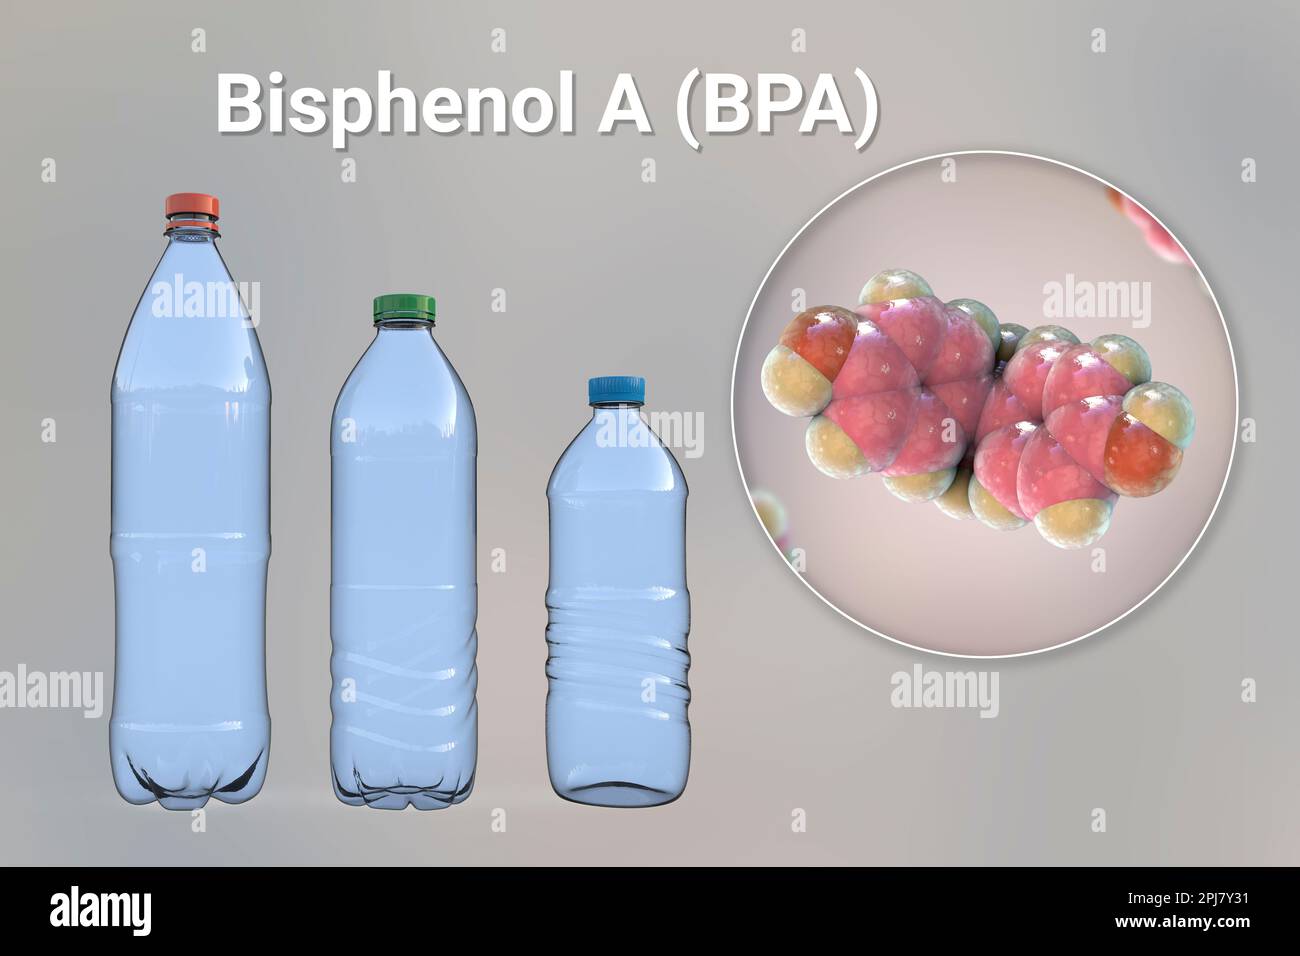 Bisphenol A Molekül und Plastikflaschen, Illustration Stockfoto